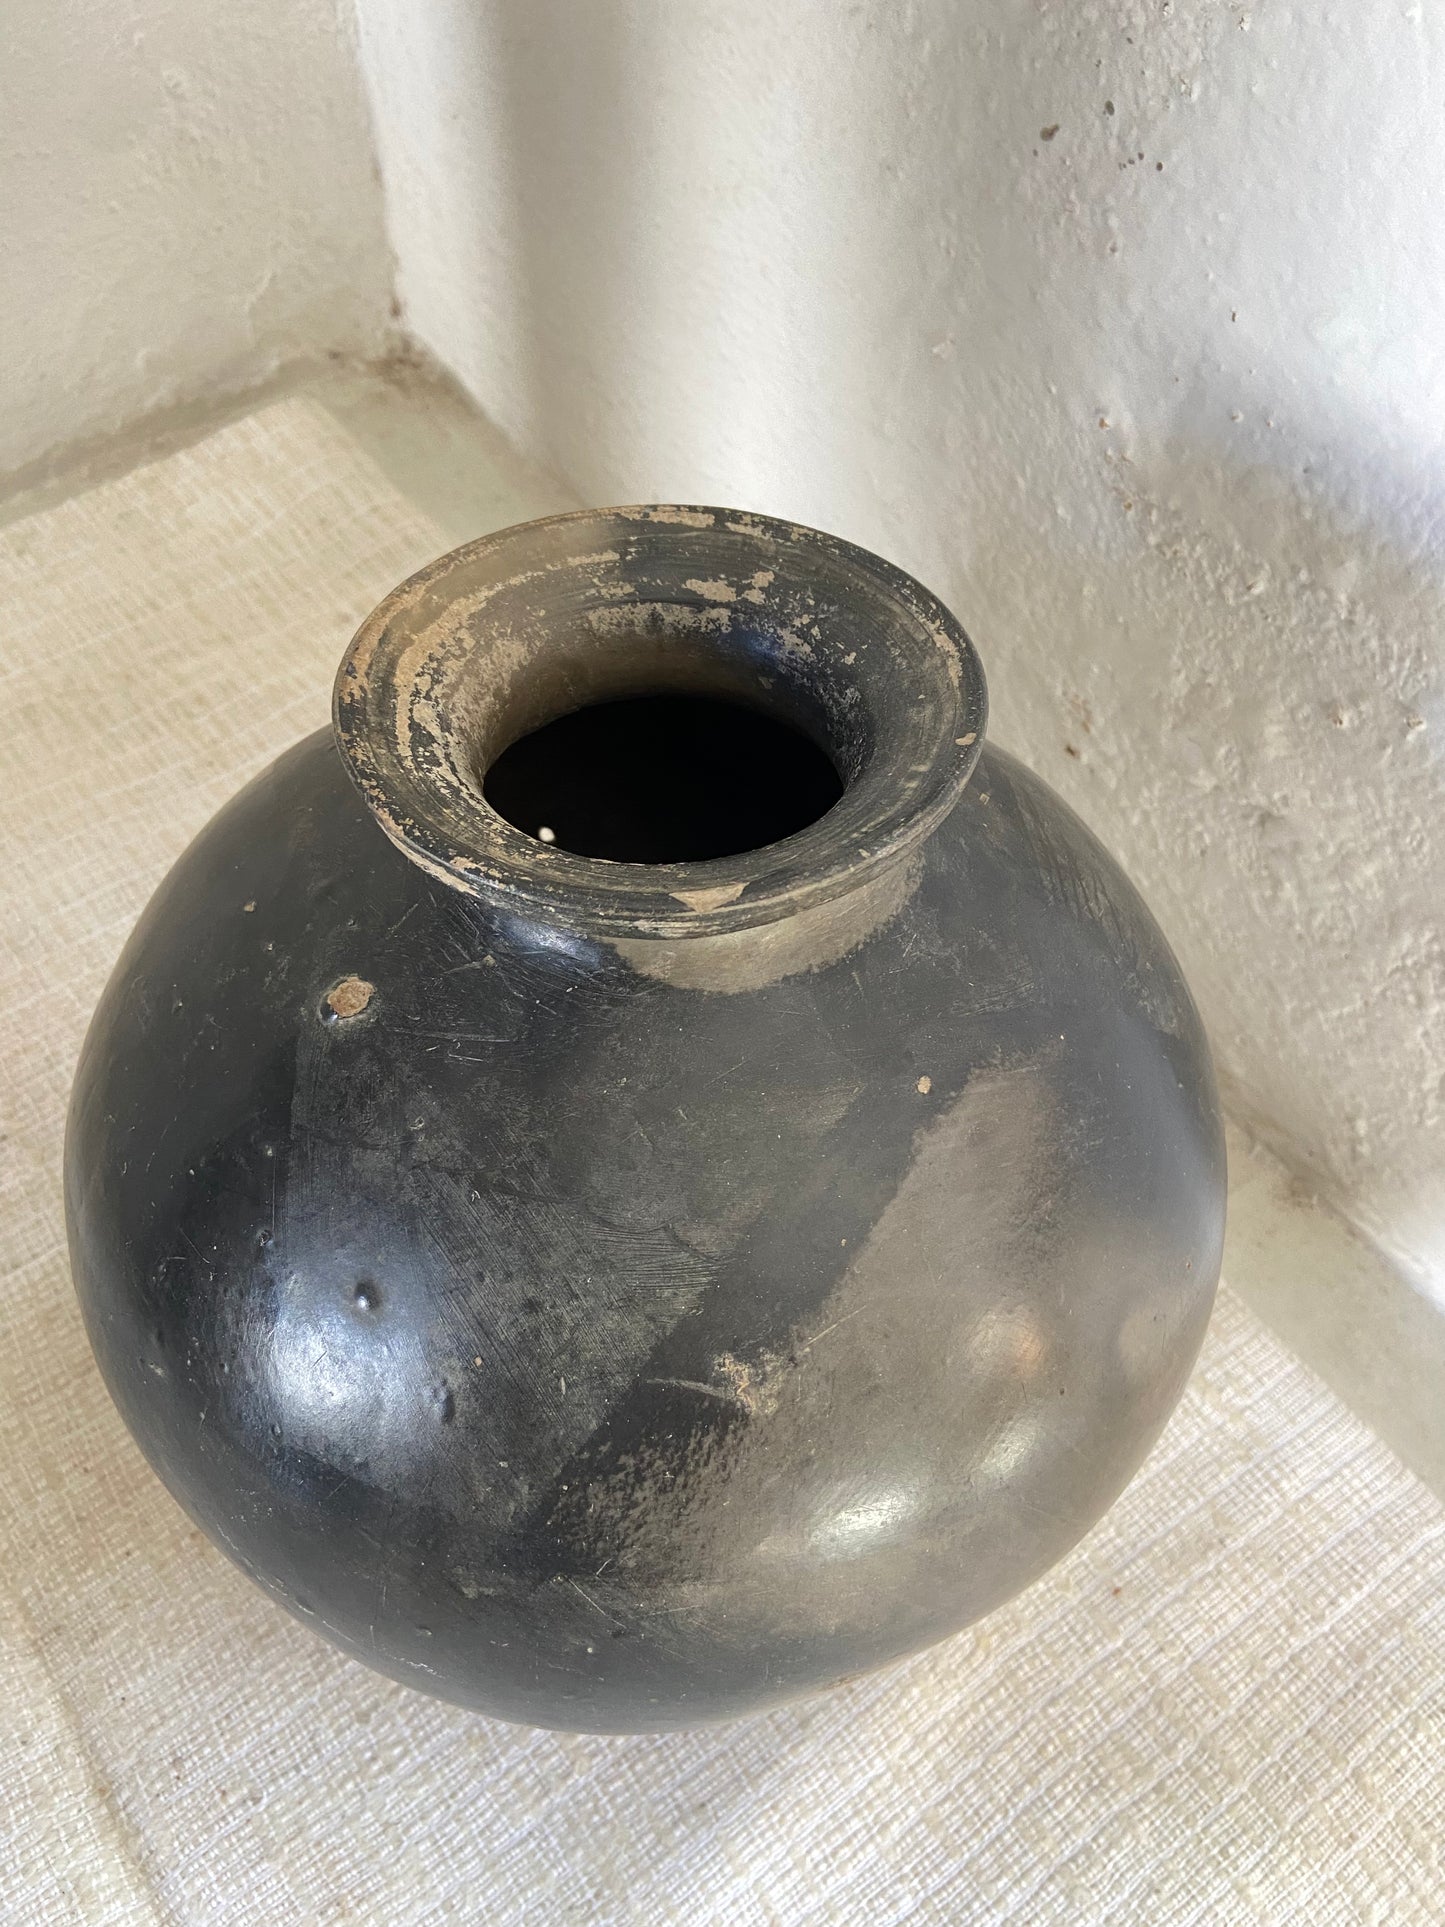 Olla Oaxaca Coyotepec / Oaxaca Black Clay Pot